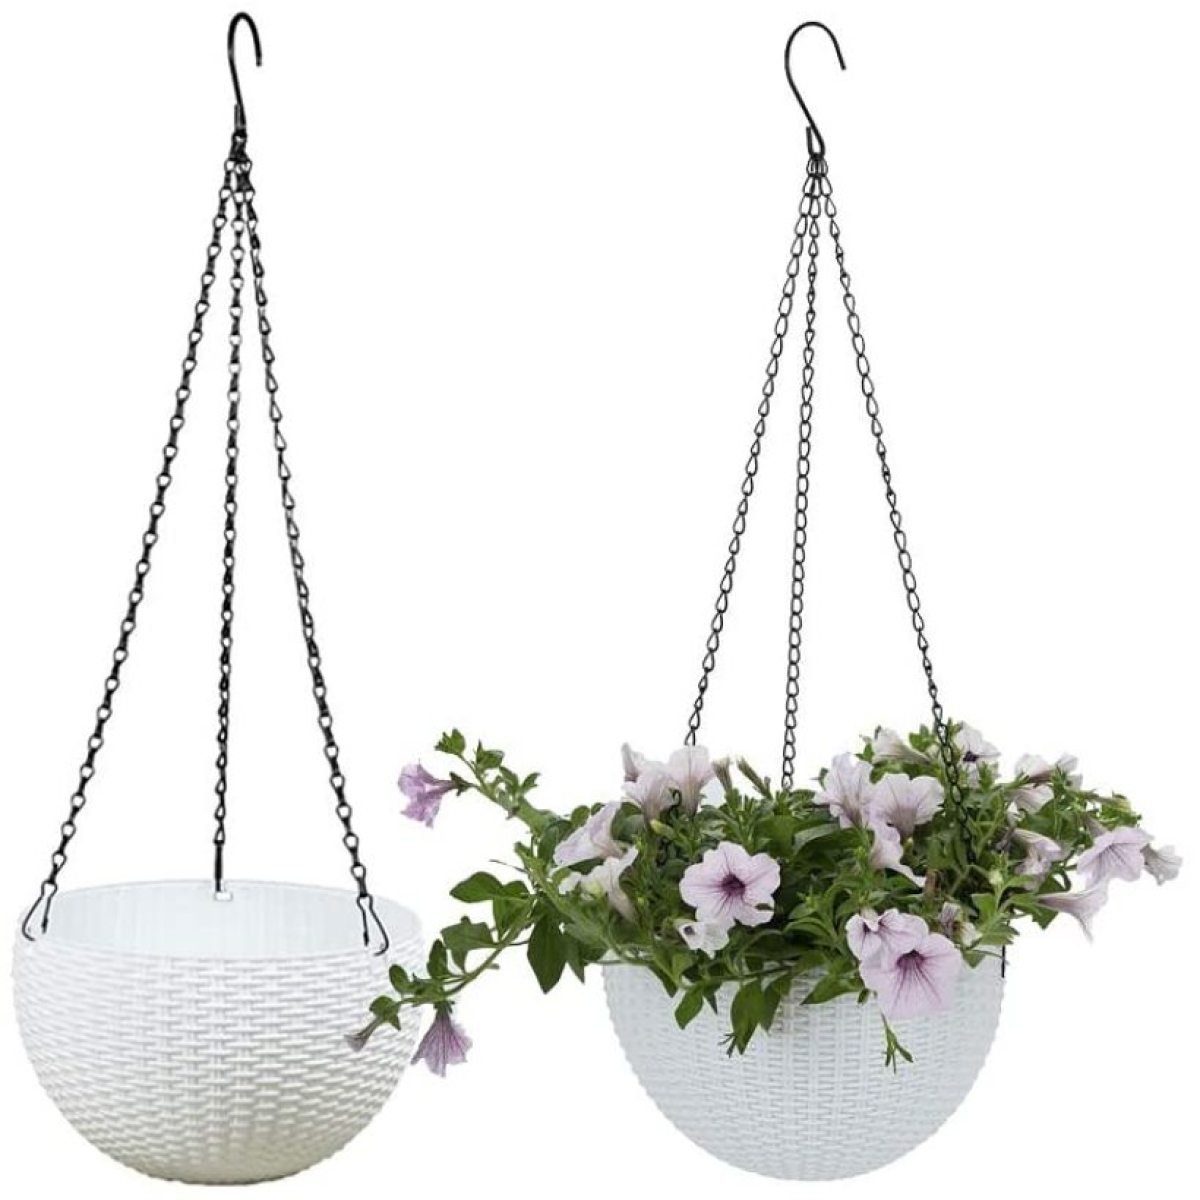 Weiß hängende 2 Hängekorb dem Aufhängen Balkon,Rattan Körbe Gärten Jormftte Blumentöpfe,für